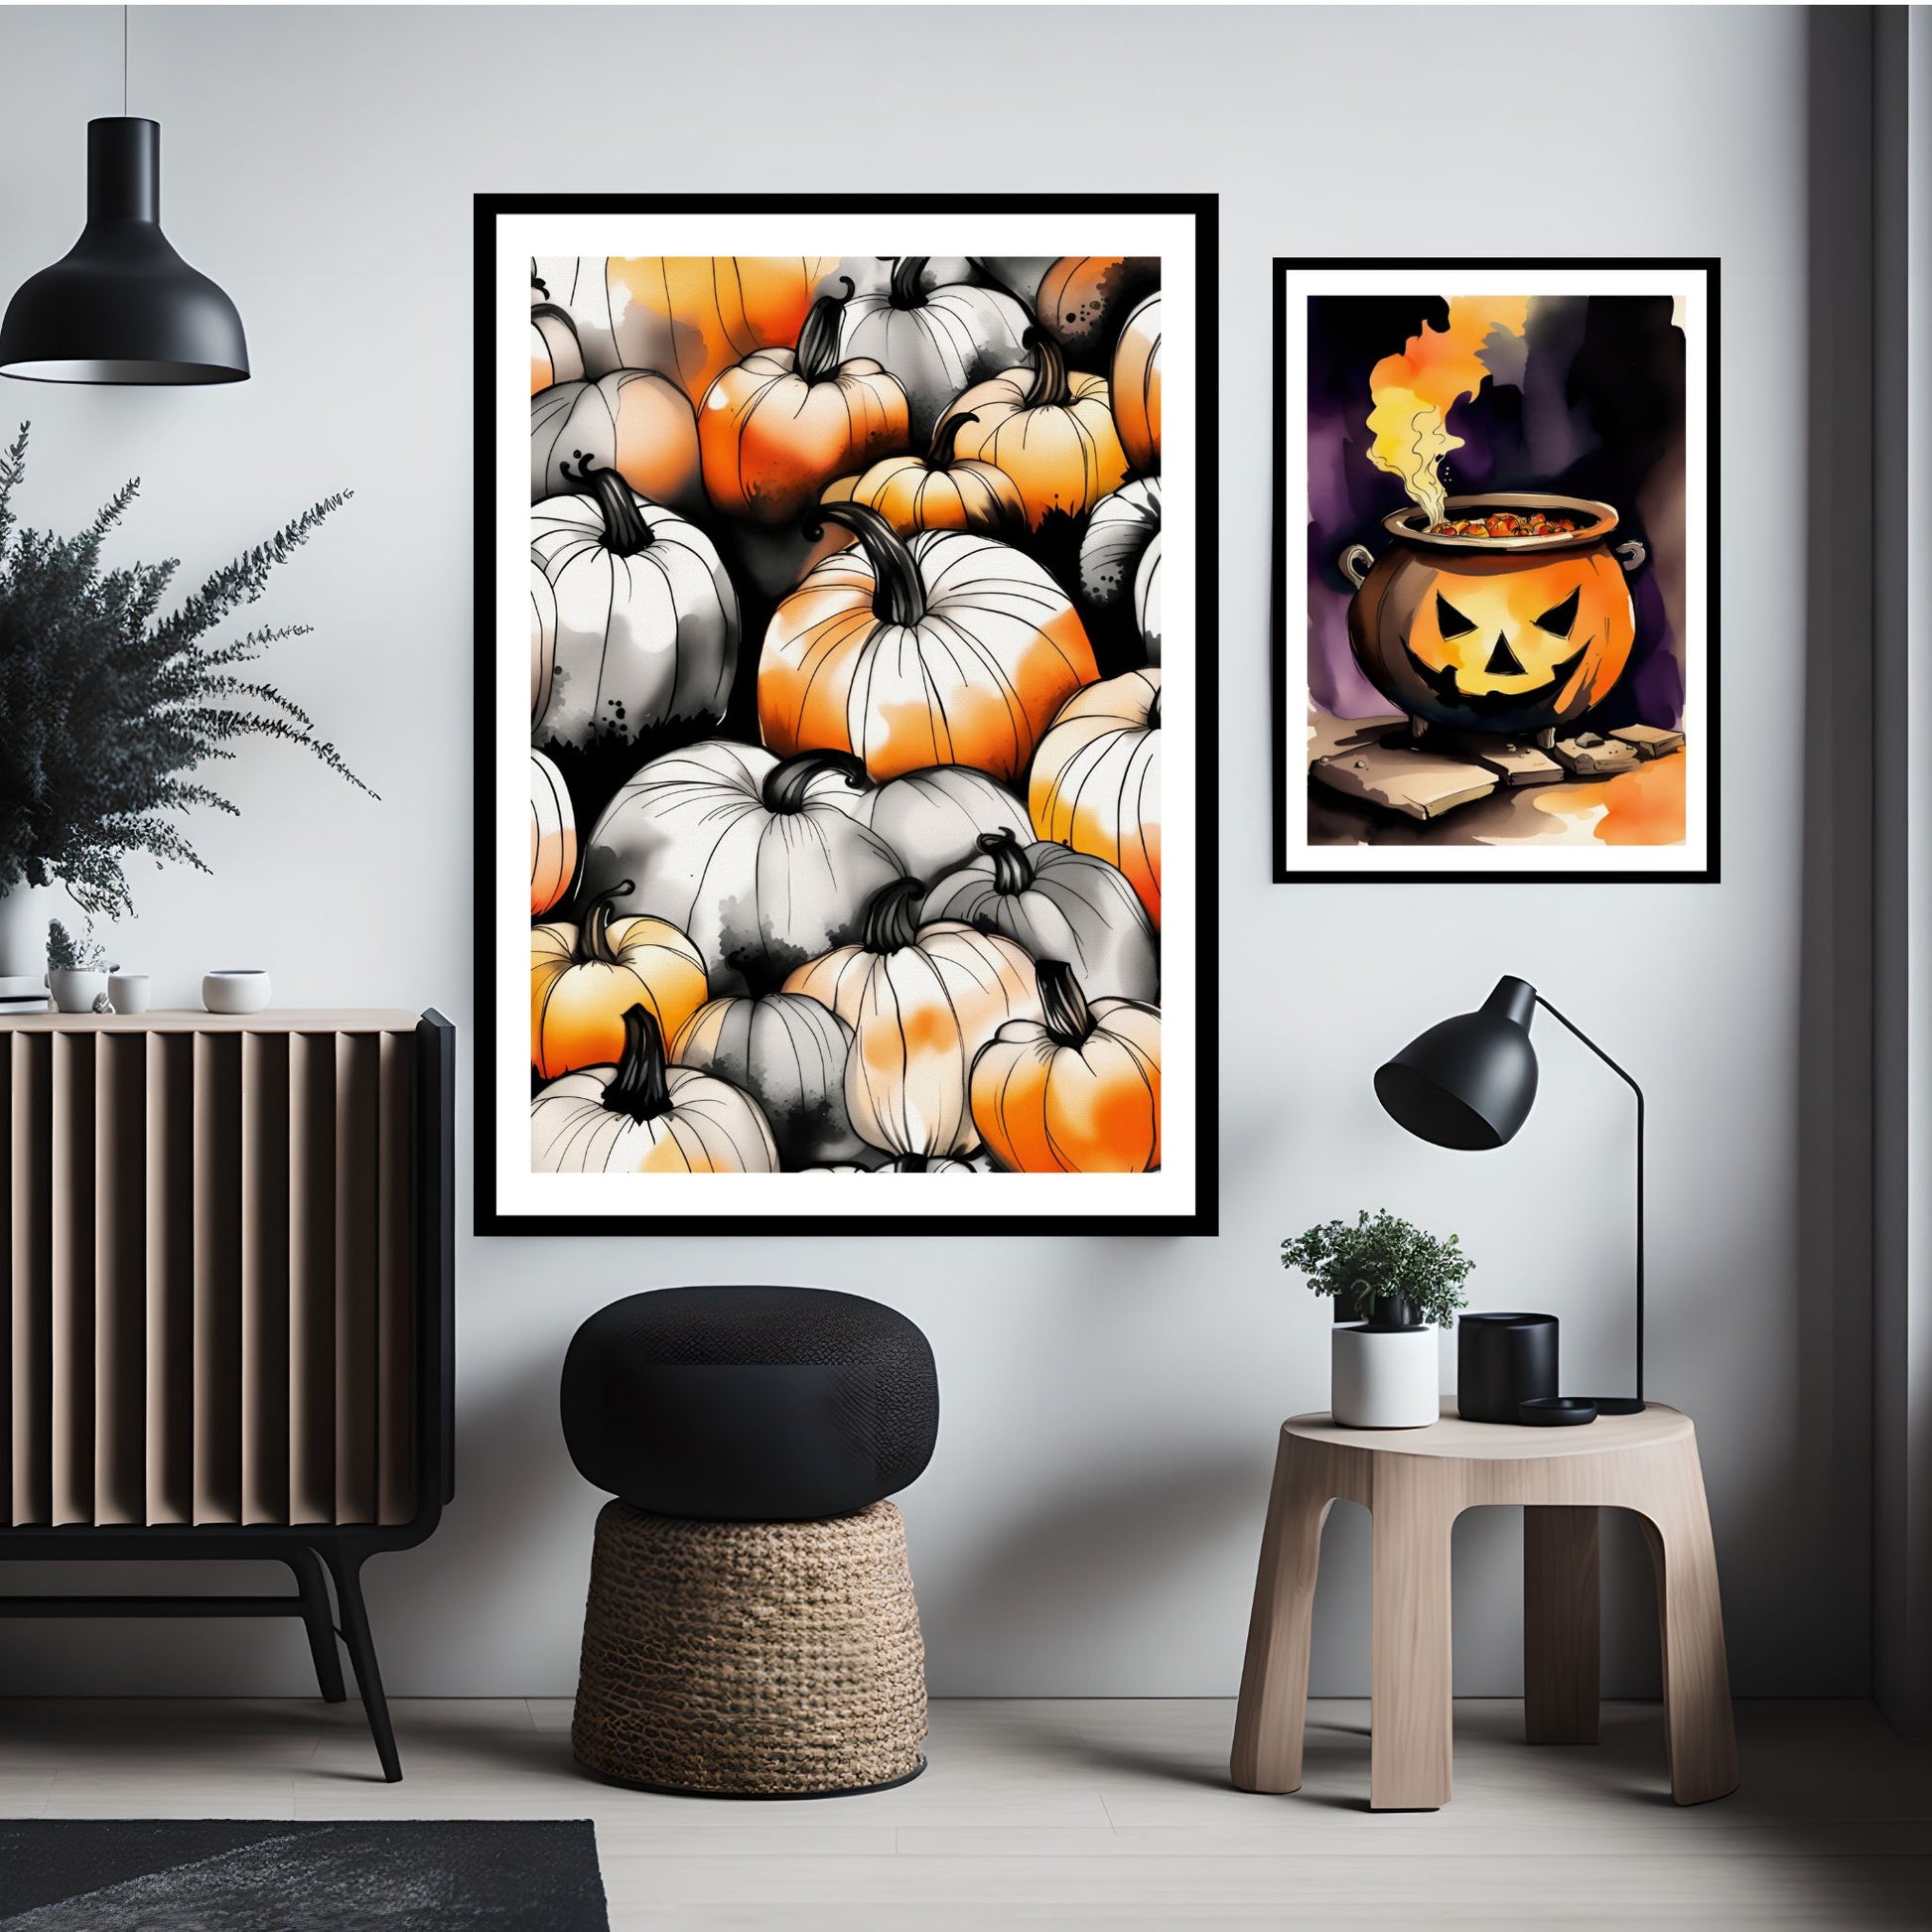 Creepy og kule halloweenplakater av gresskar og en gryte